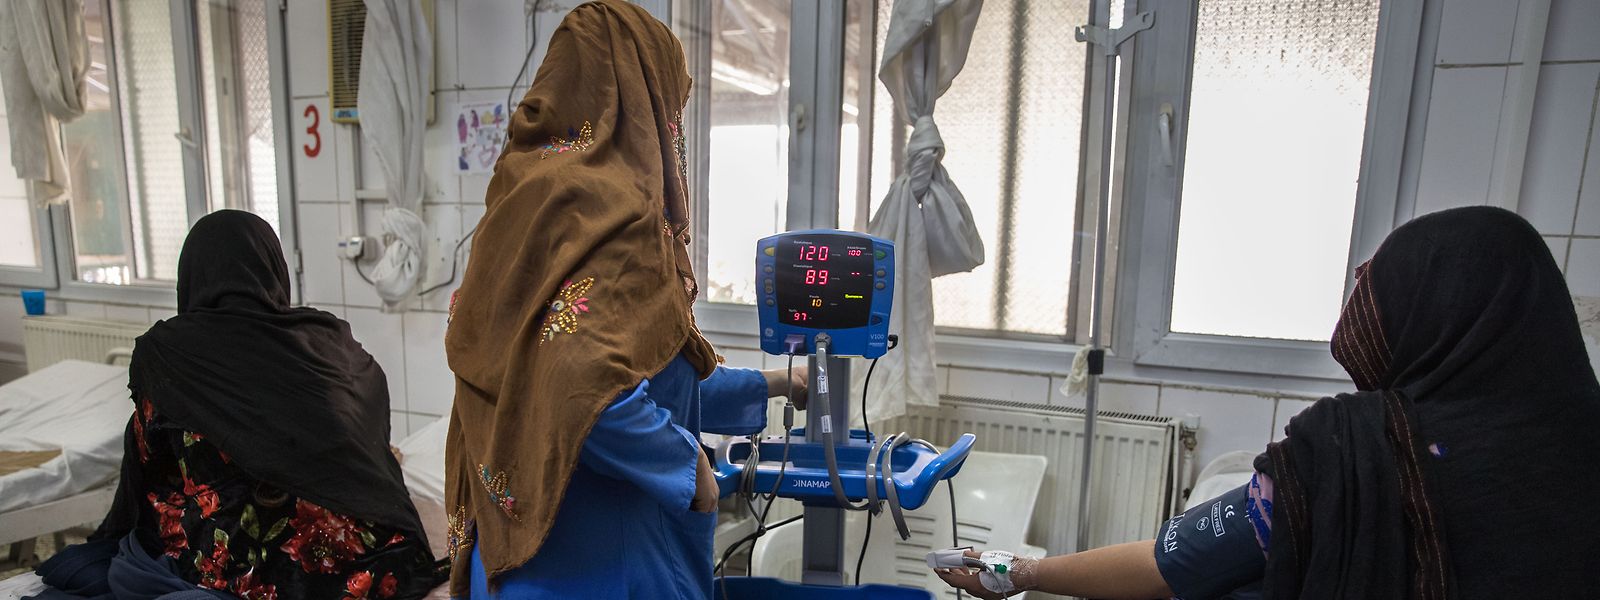 In Afghanistan, wo nur weibliche medizinische Fachkräfte Frauen behandeln können, würde ein Arbeitsverbot für Frauen in NGOs das Gesundheitssystem zum Bröckeln bringen, betonen mehrere Organisationen. 